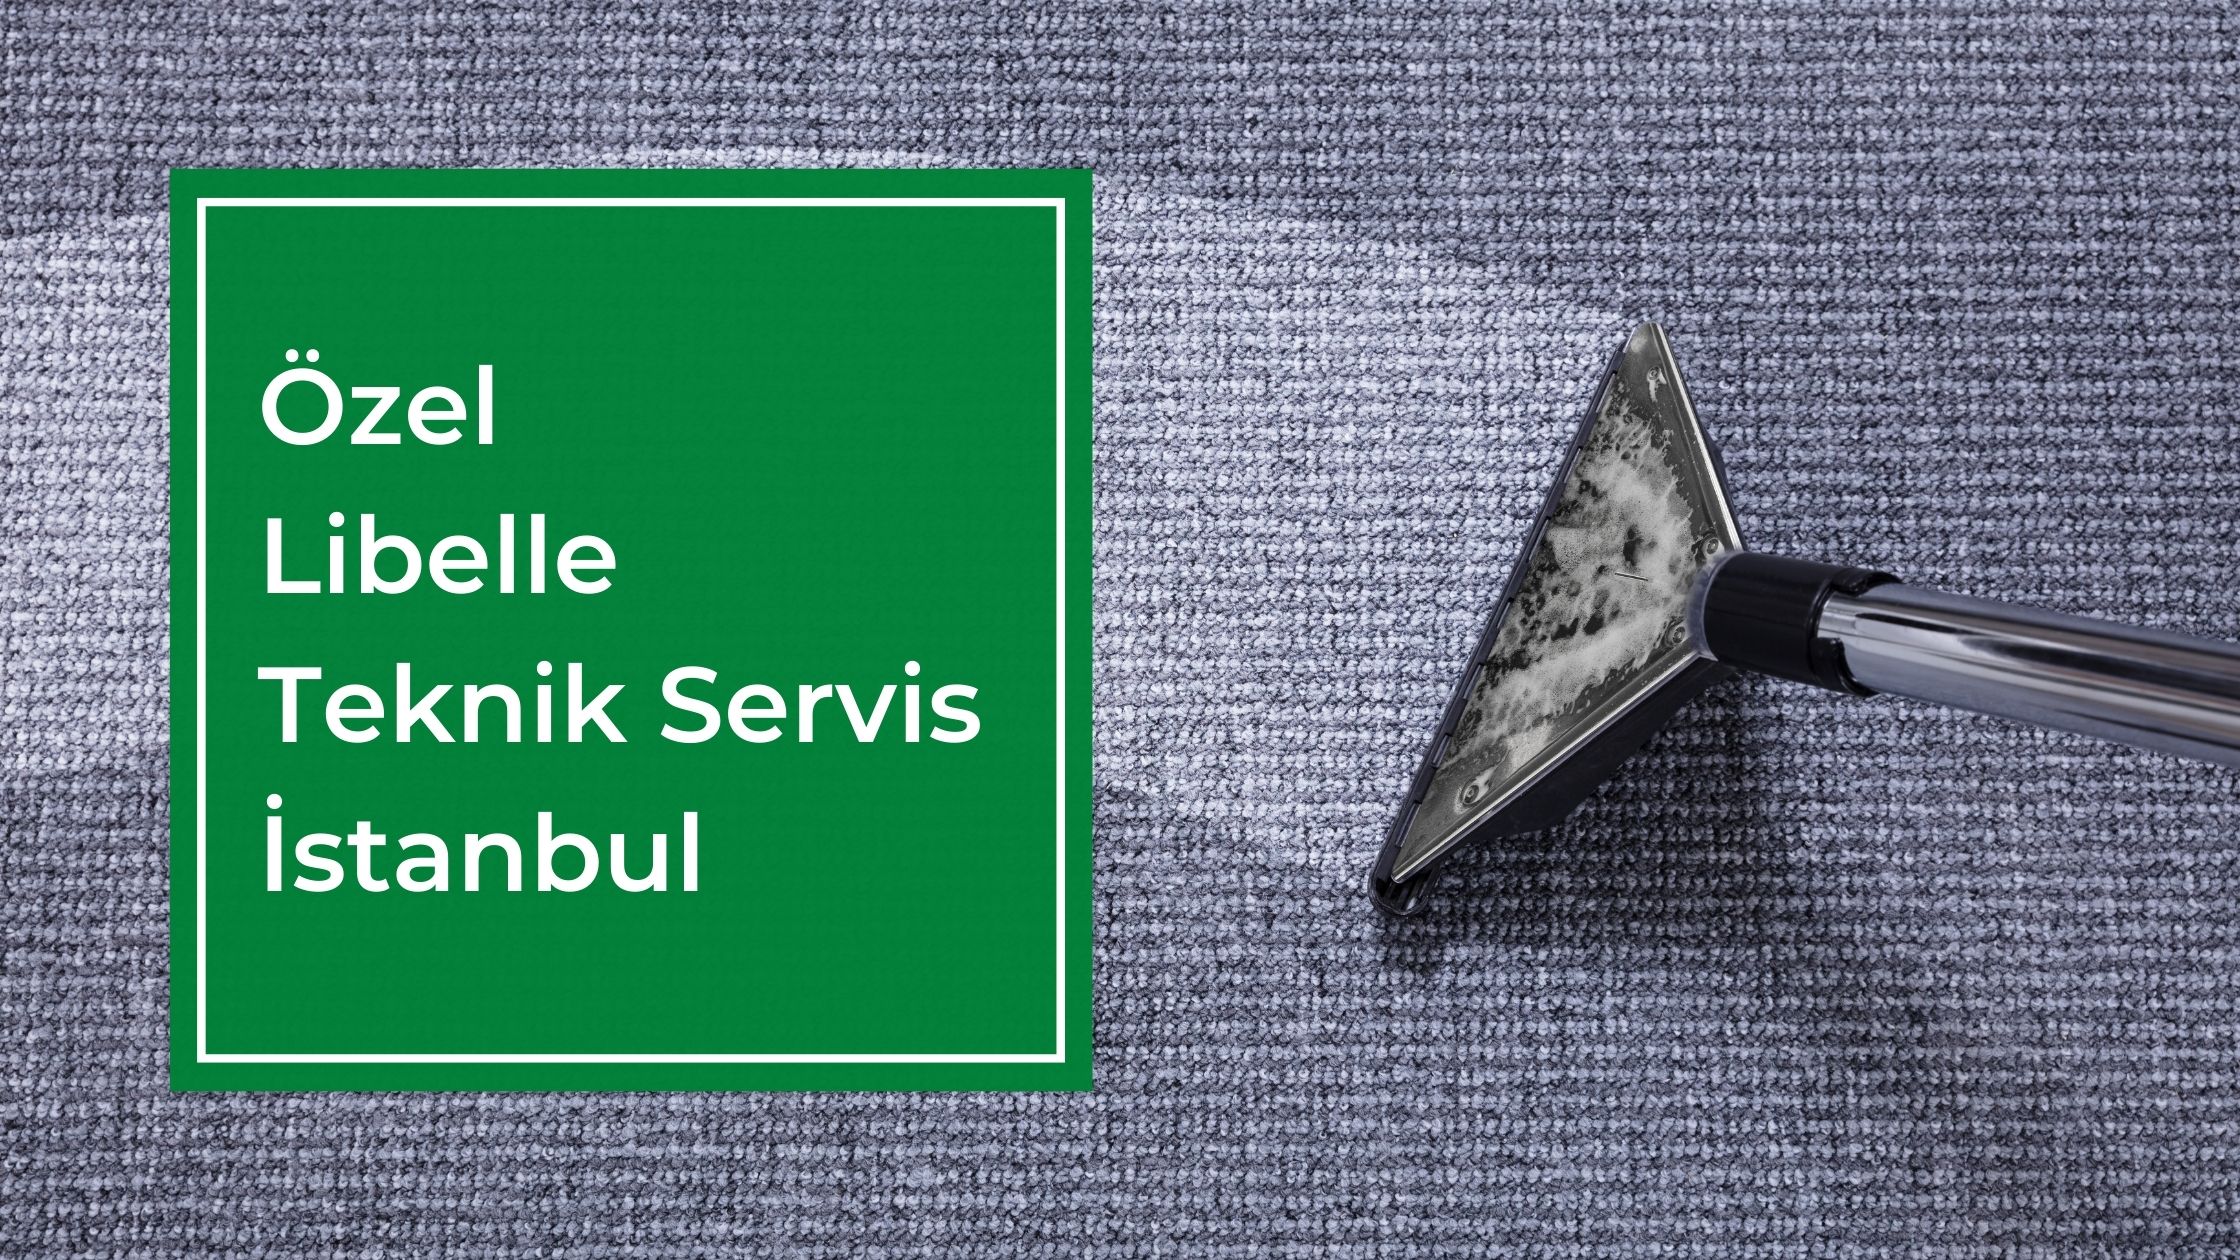 Özel Libelle Teknik Servis İstanbul